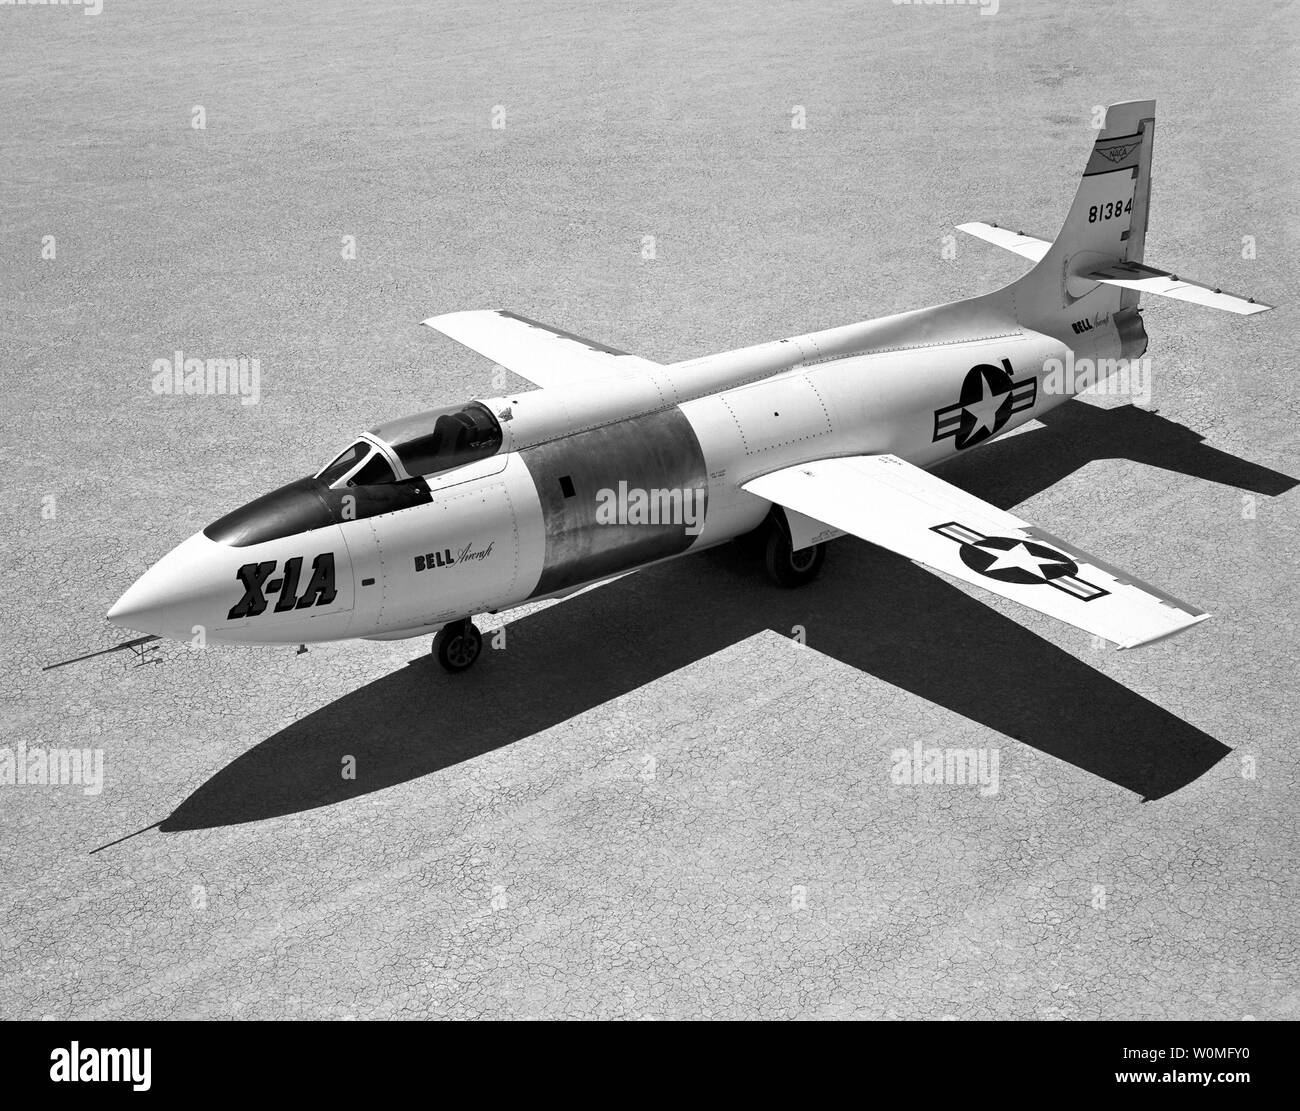 La Bell aircraft corporation X-1a es visto en julio de 1955 sentado en el lago seco Rogers en la base aérea Edwards, California. El X-1A fue creada para explorar las características de control y estabilidad a velocidades superiores a Mach 2 y una altitud superior a 90.000 pies. UPI/NASA Foto de stock